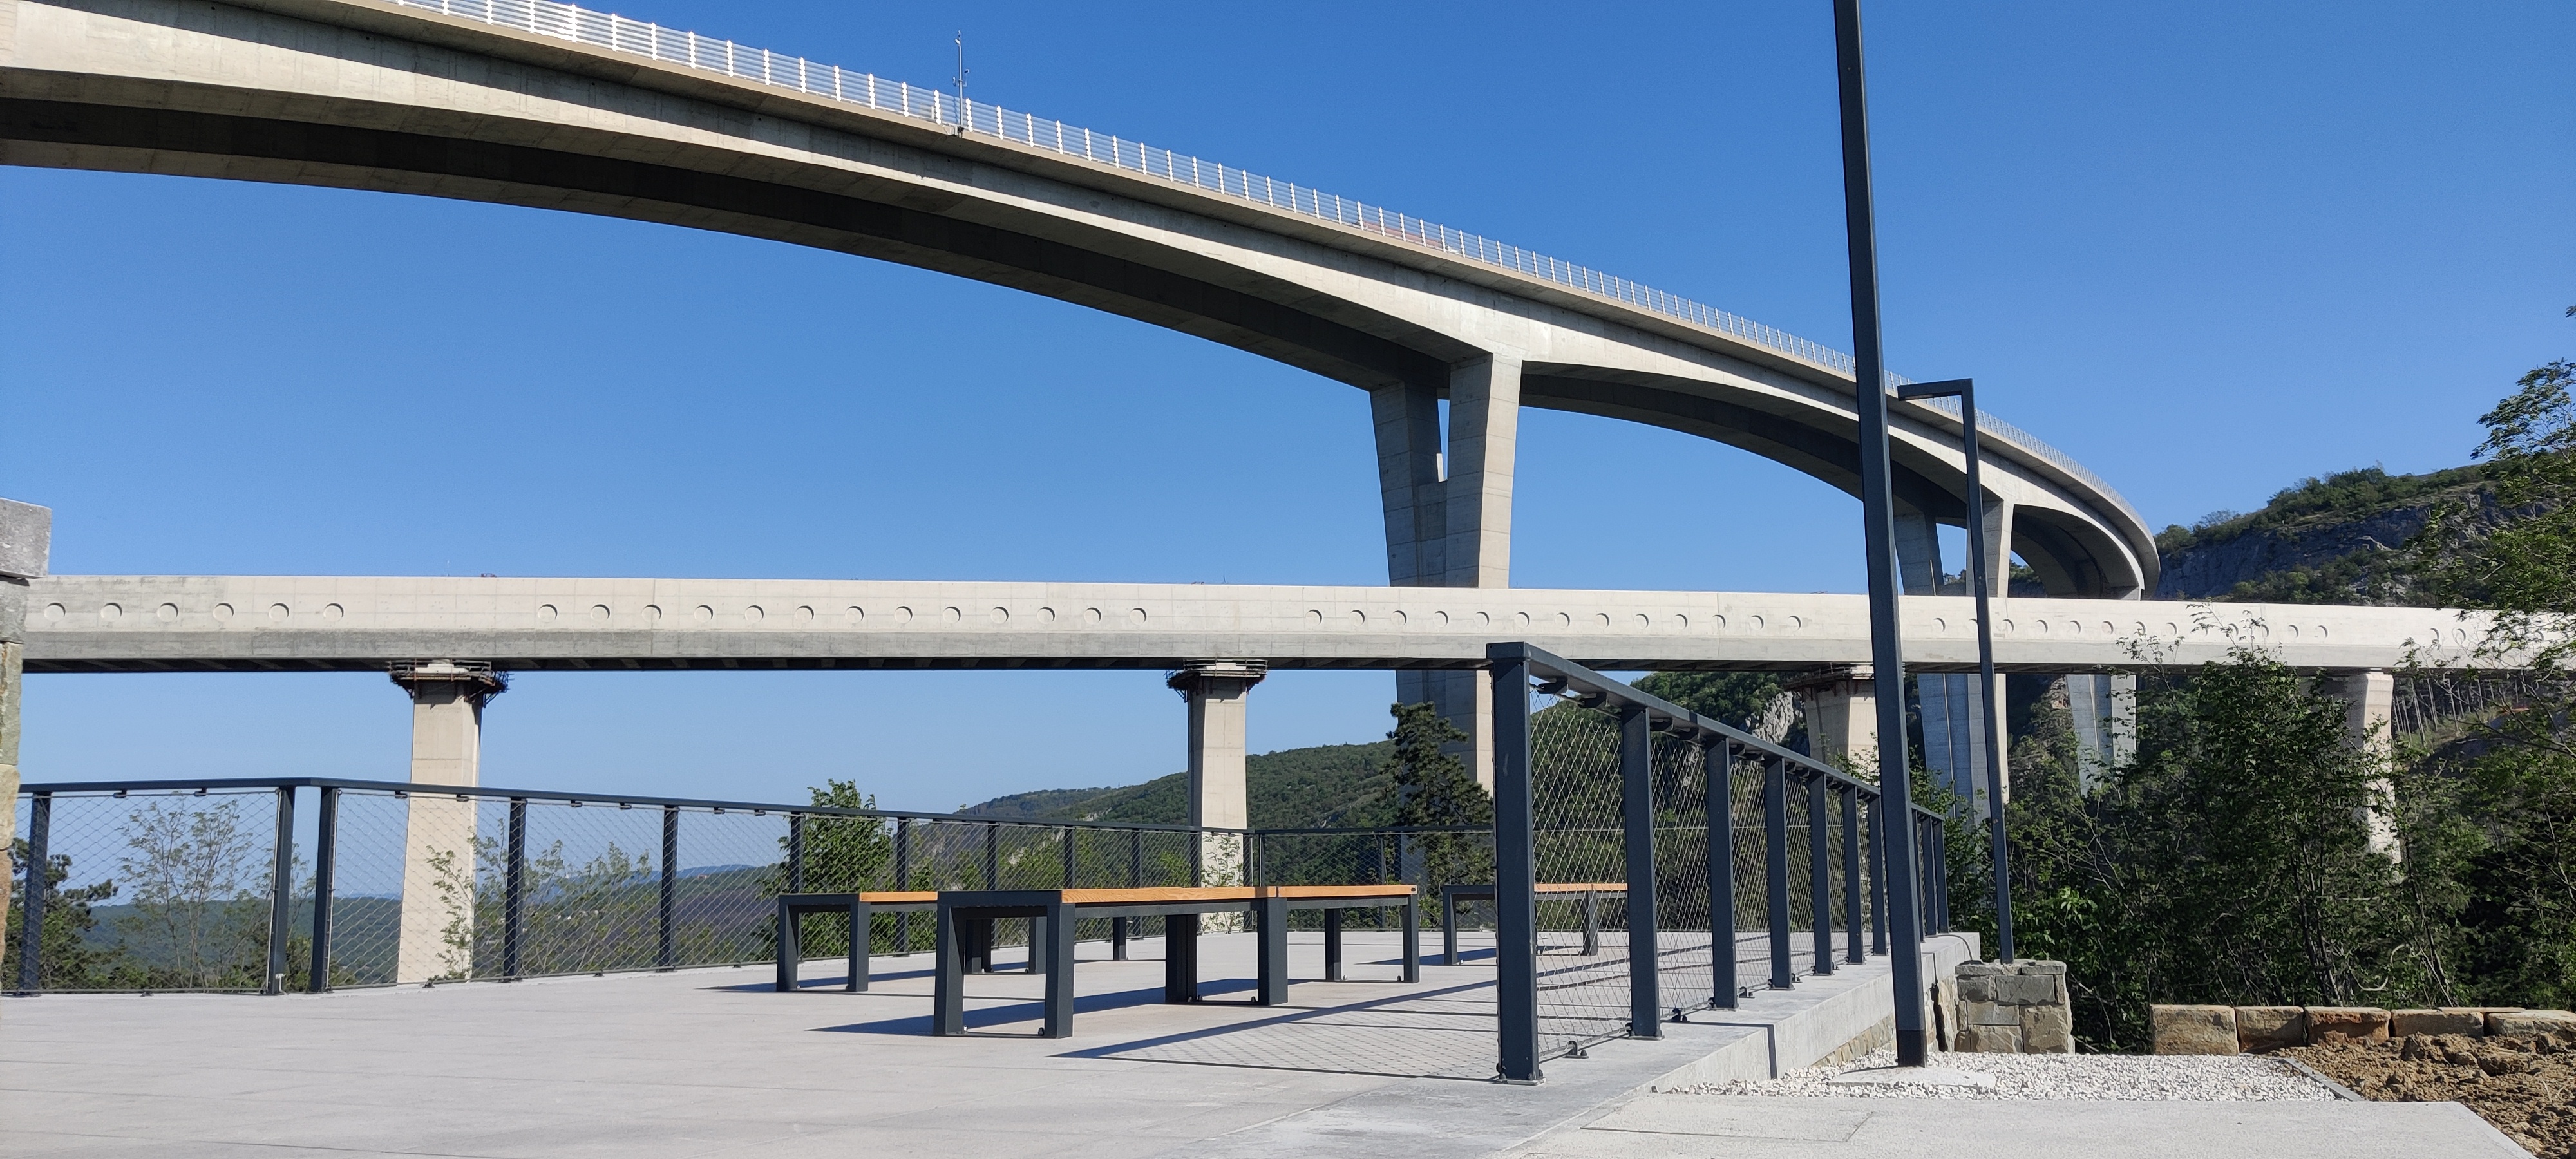 Projekt Vstopna točka Kraški rob (Foto: vstopna točka pod viaduktom kjer so urejene klopi in mize za piknik)